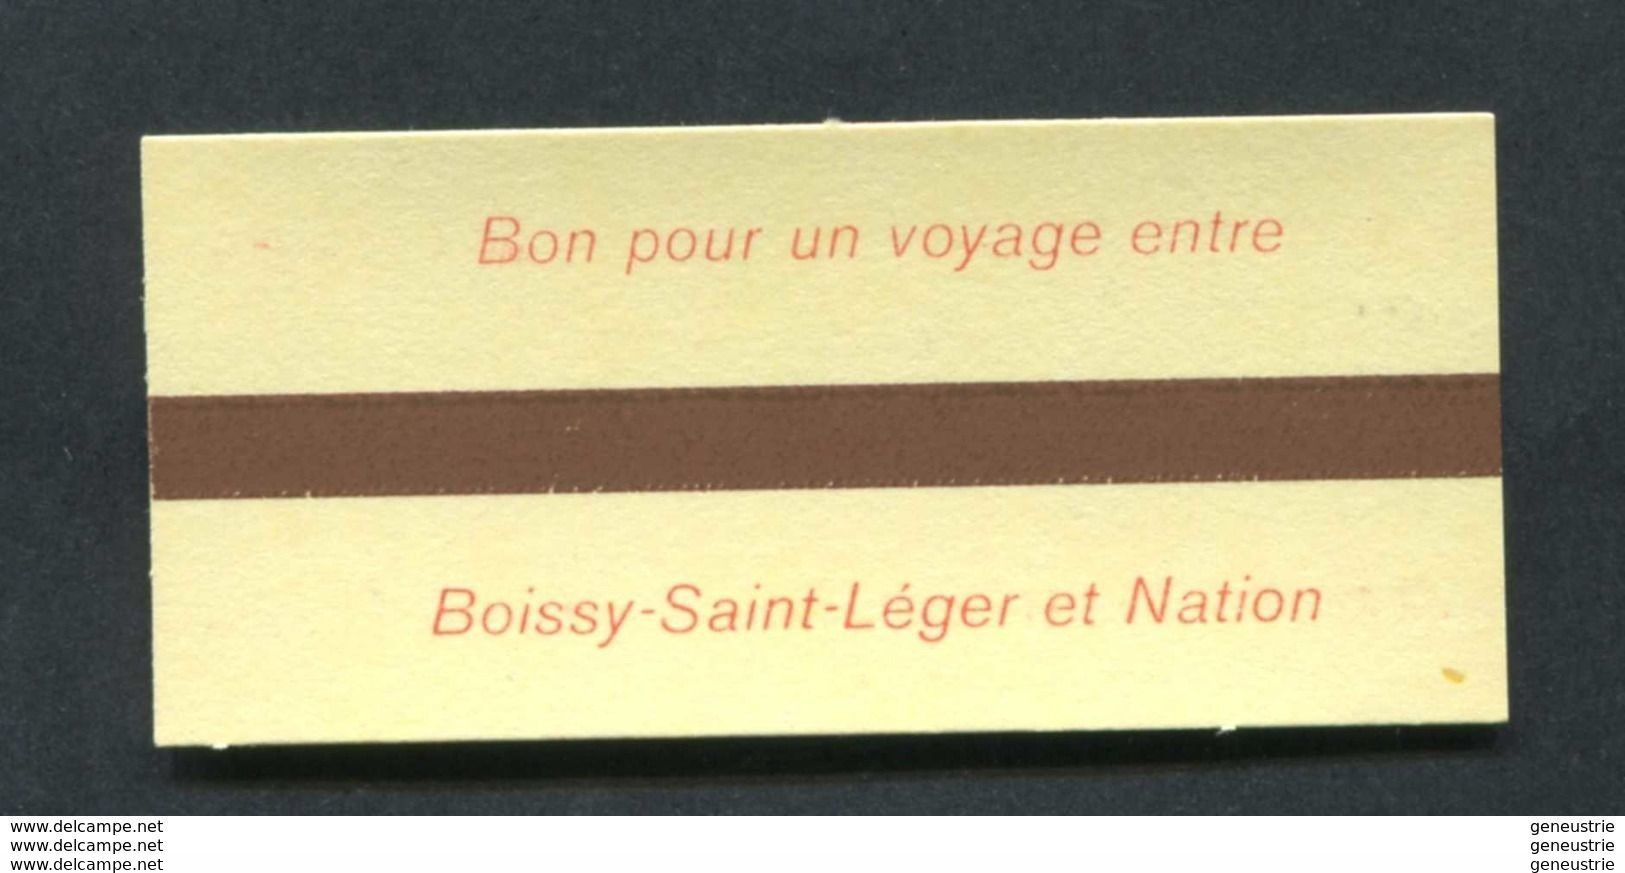 Ticket Neuf De Métro / RER - SNCF / RATP Pour Le Personnel SNCF (1ère Classe Boissy Saint Leger / Paris Nation) - Europa